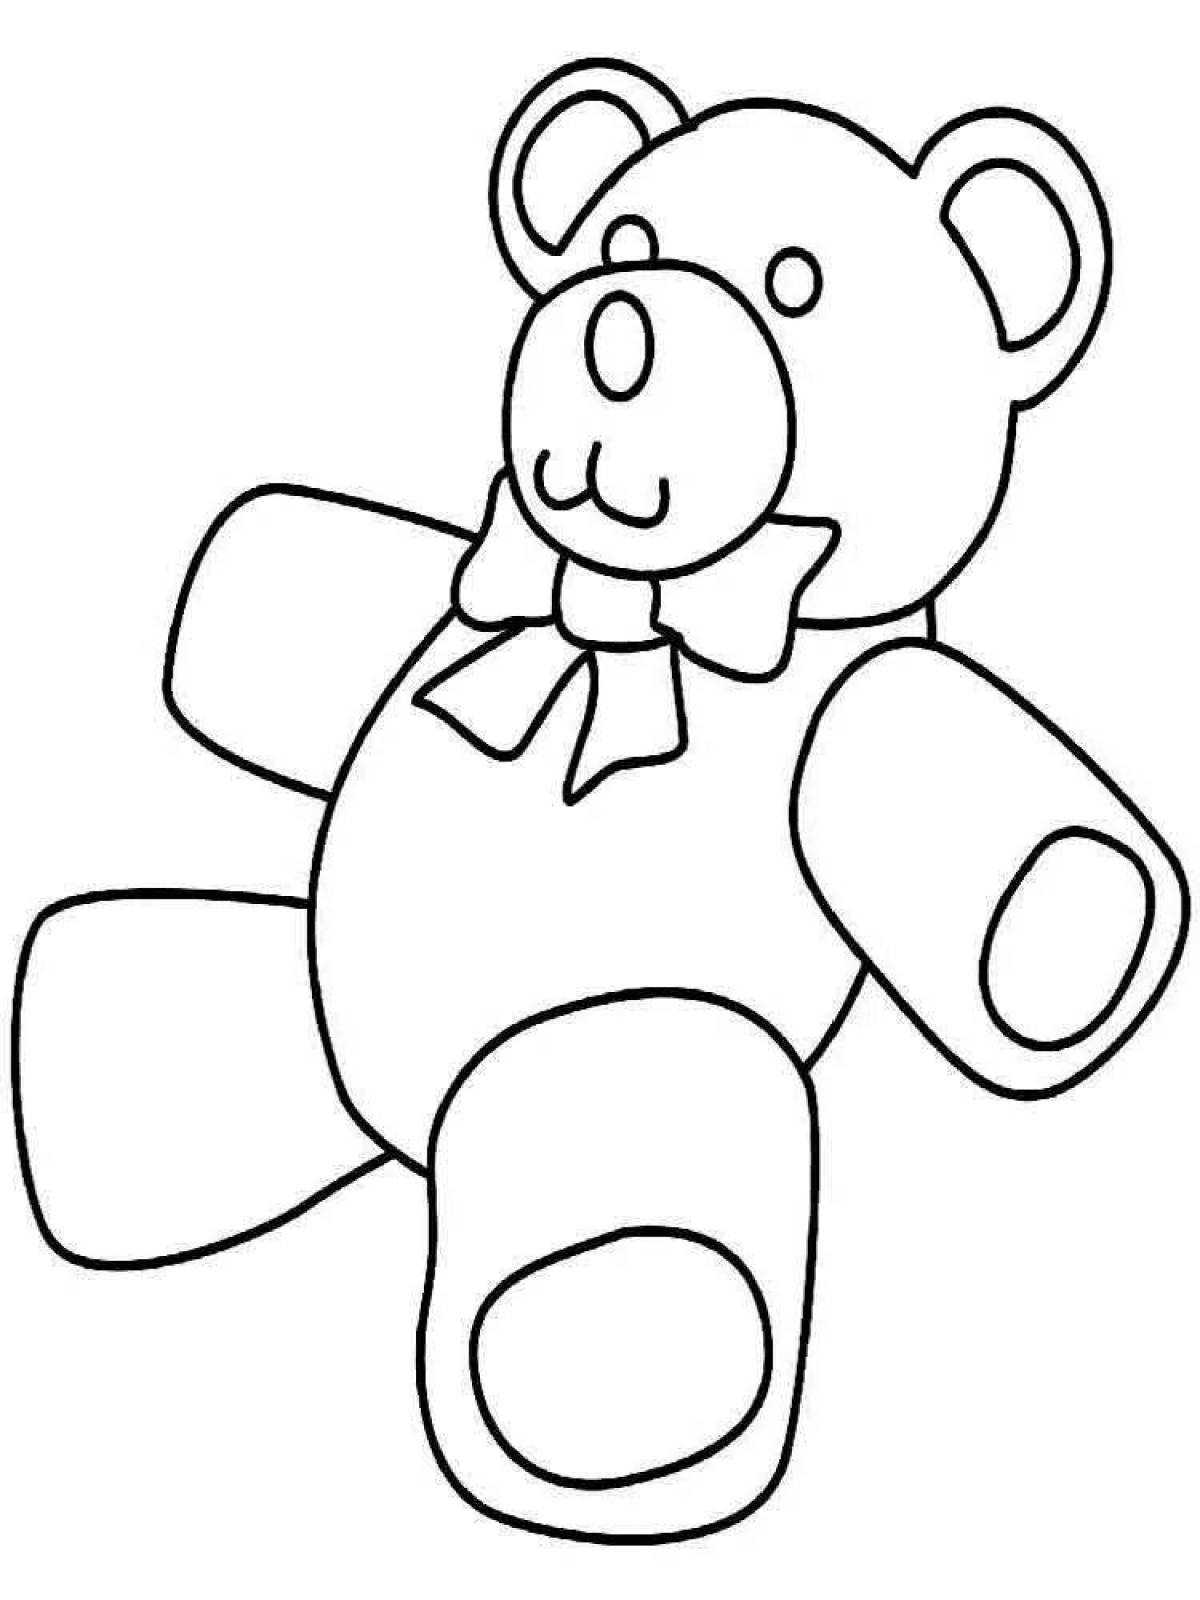 Cozy teddy bear coloring page